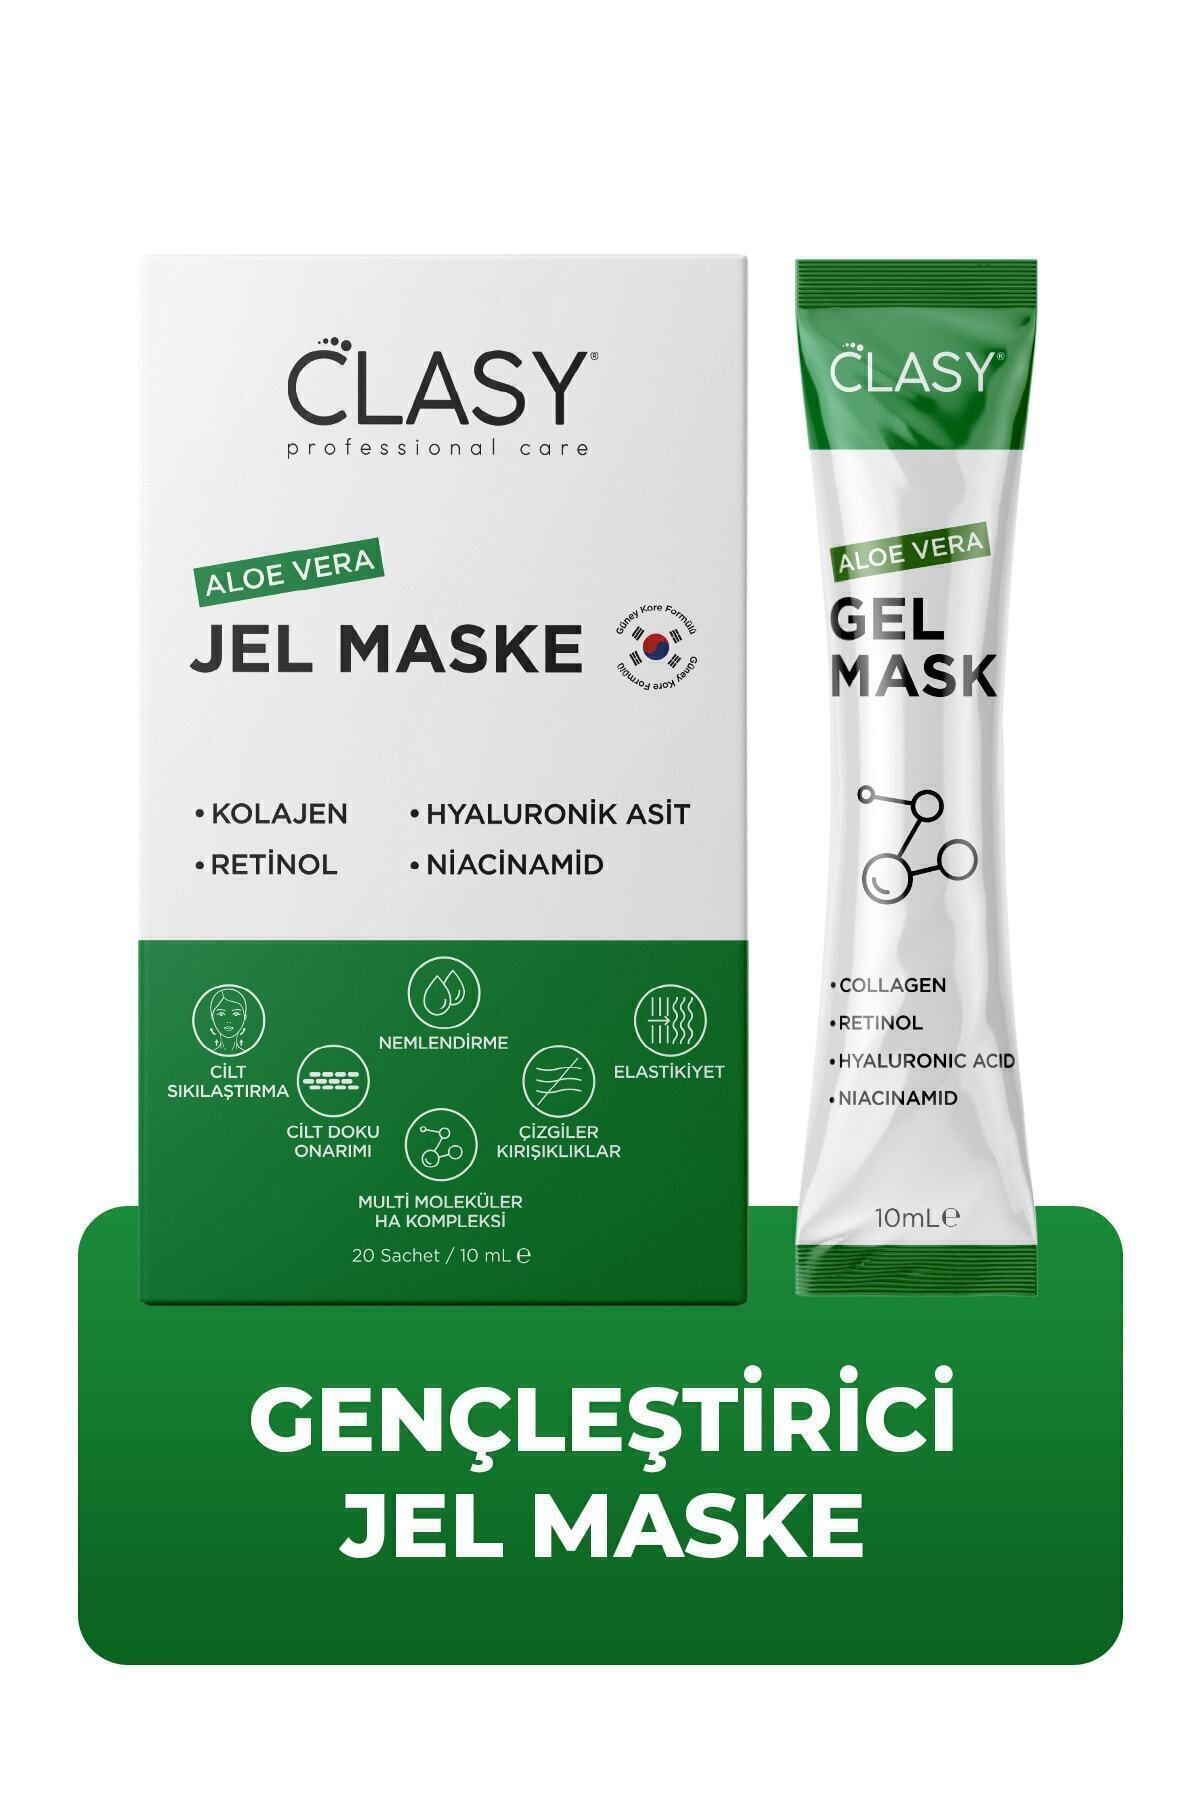 Clasy Care Aloevera Gel Mask